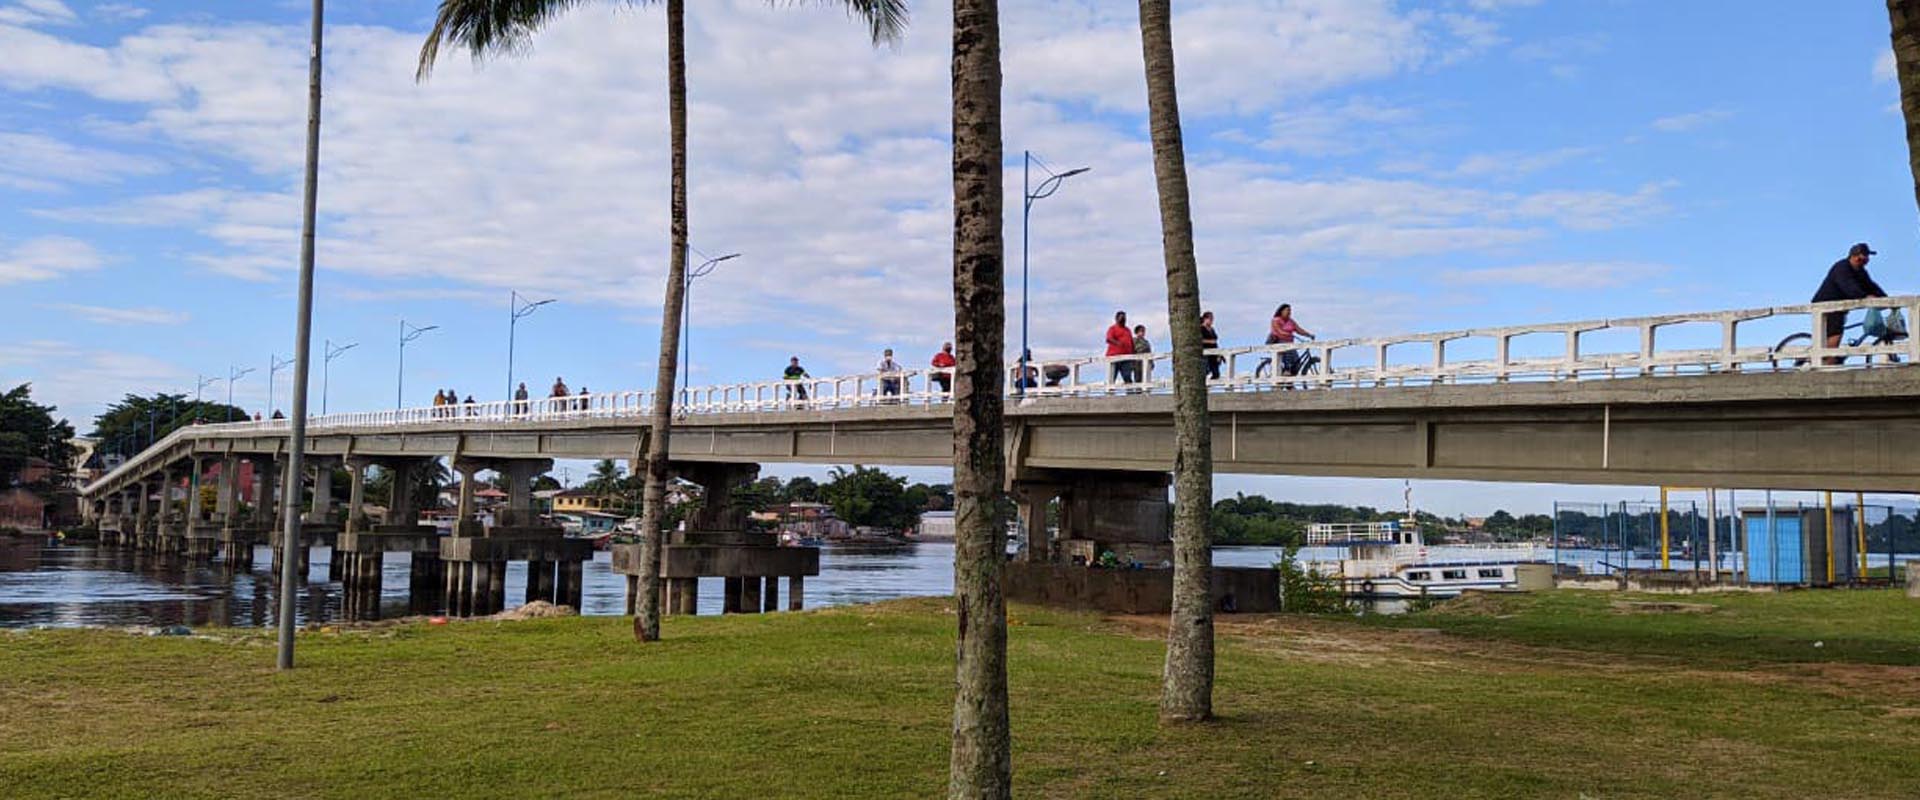 Imtraff está realizando estudos para ampliação estrutural de ponte no Paraná